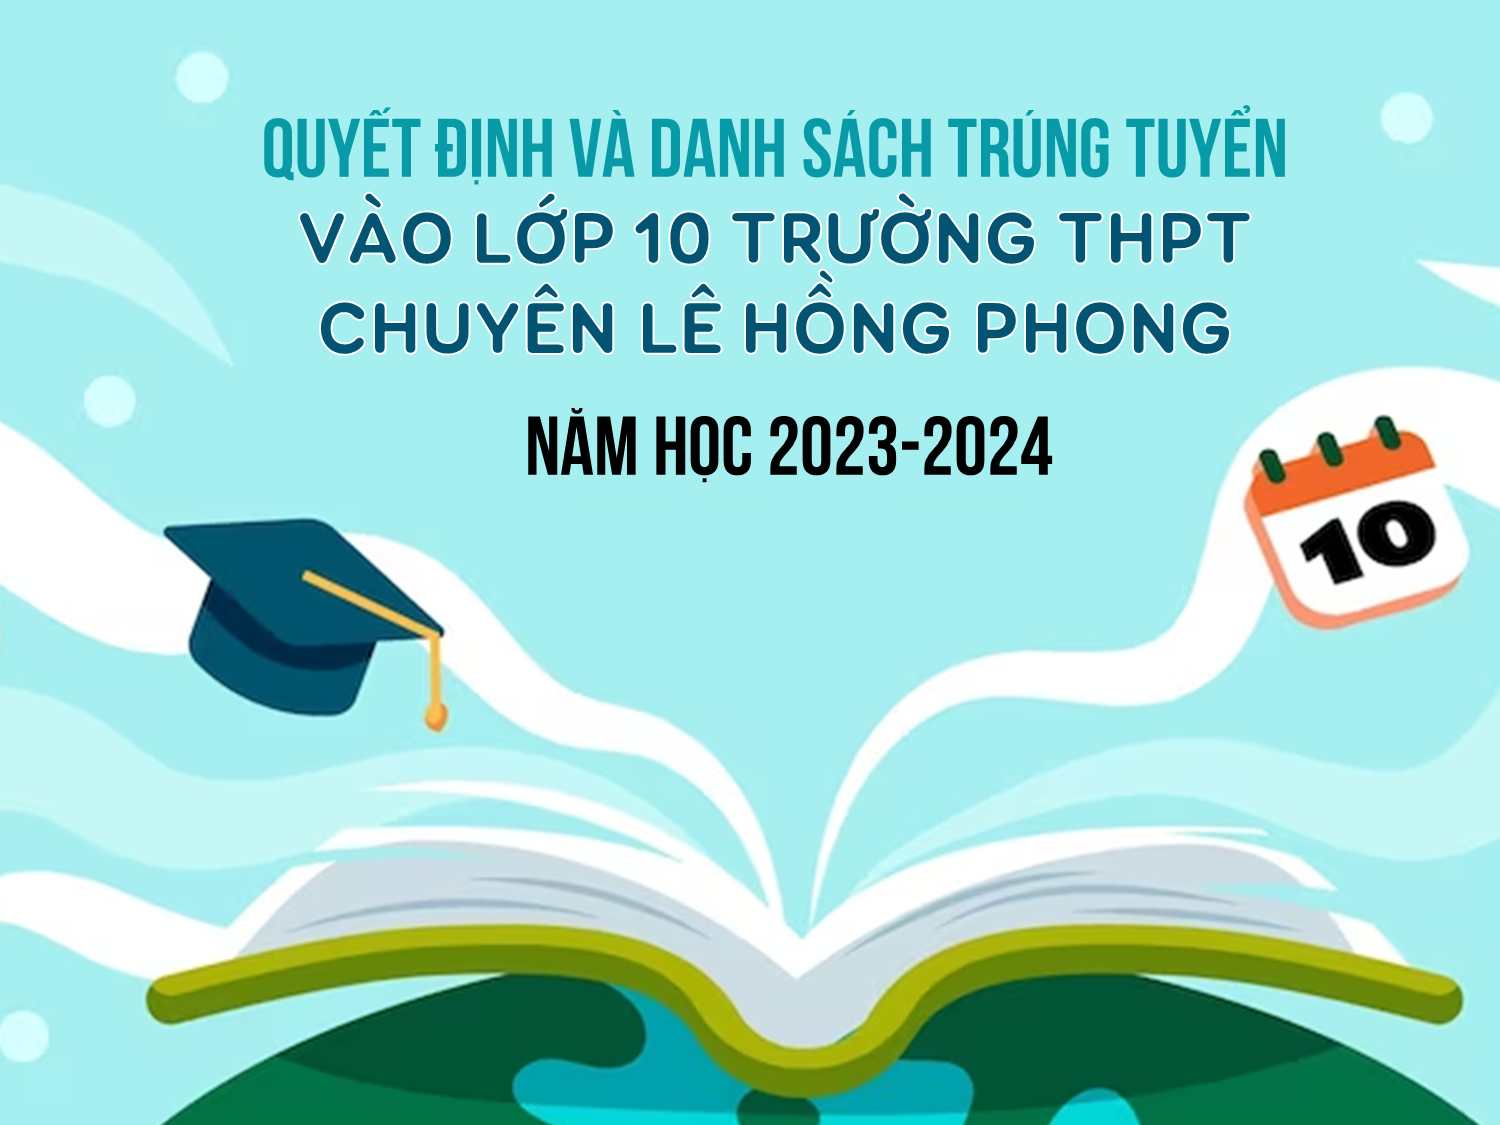 Quyết định và Danh sách trúng tuyển vào lớp 10 trường THPT chuyên Lê Hồng Phong năm học 2023-2024